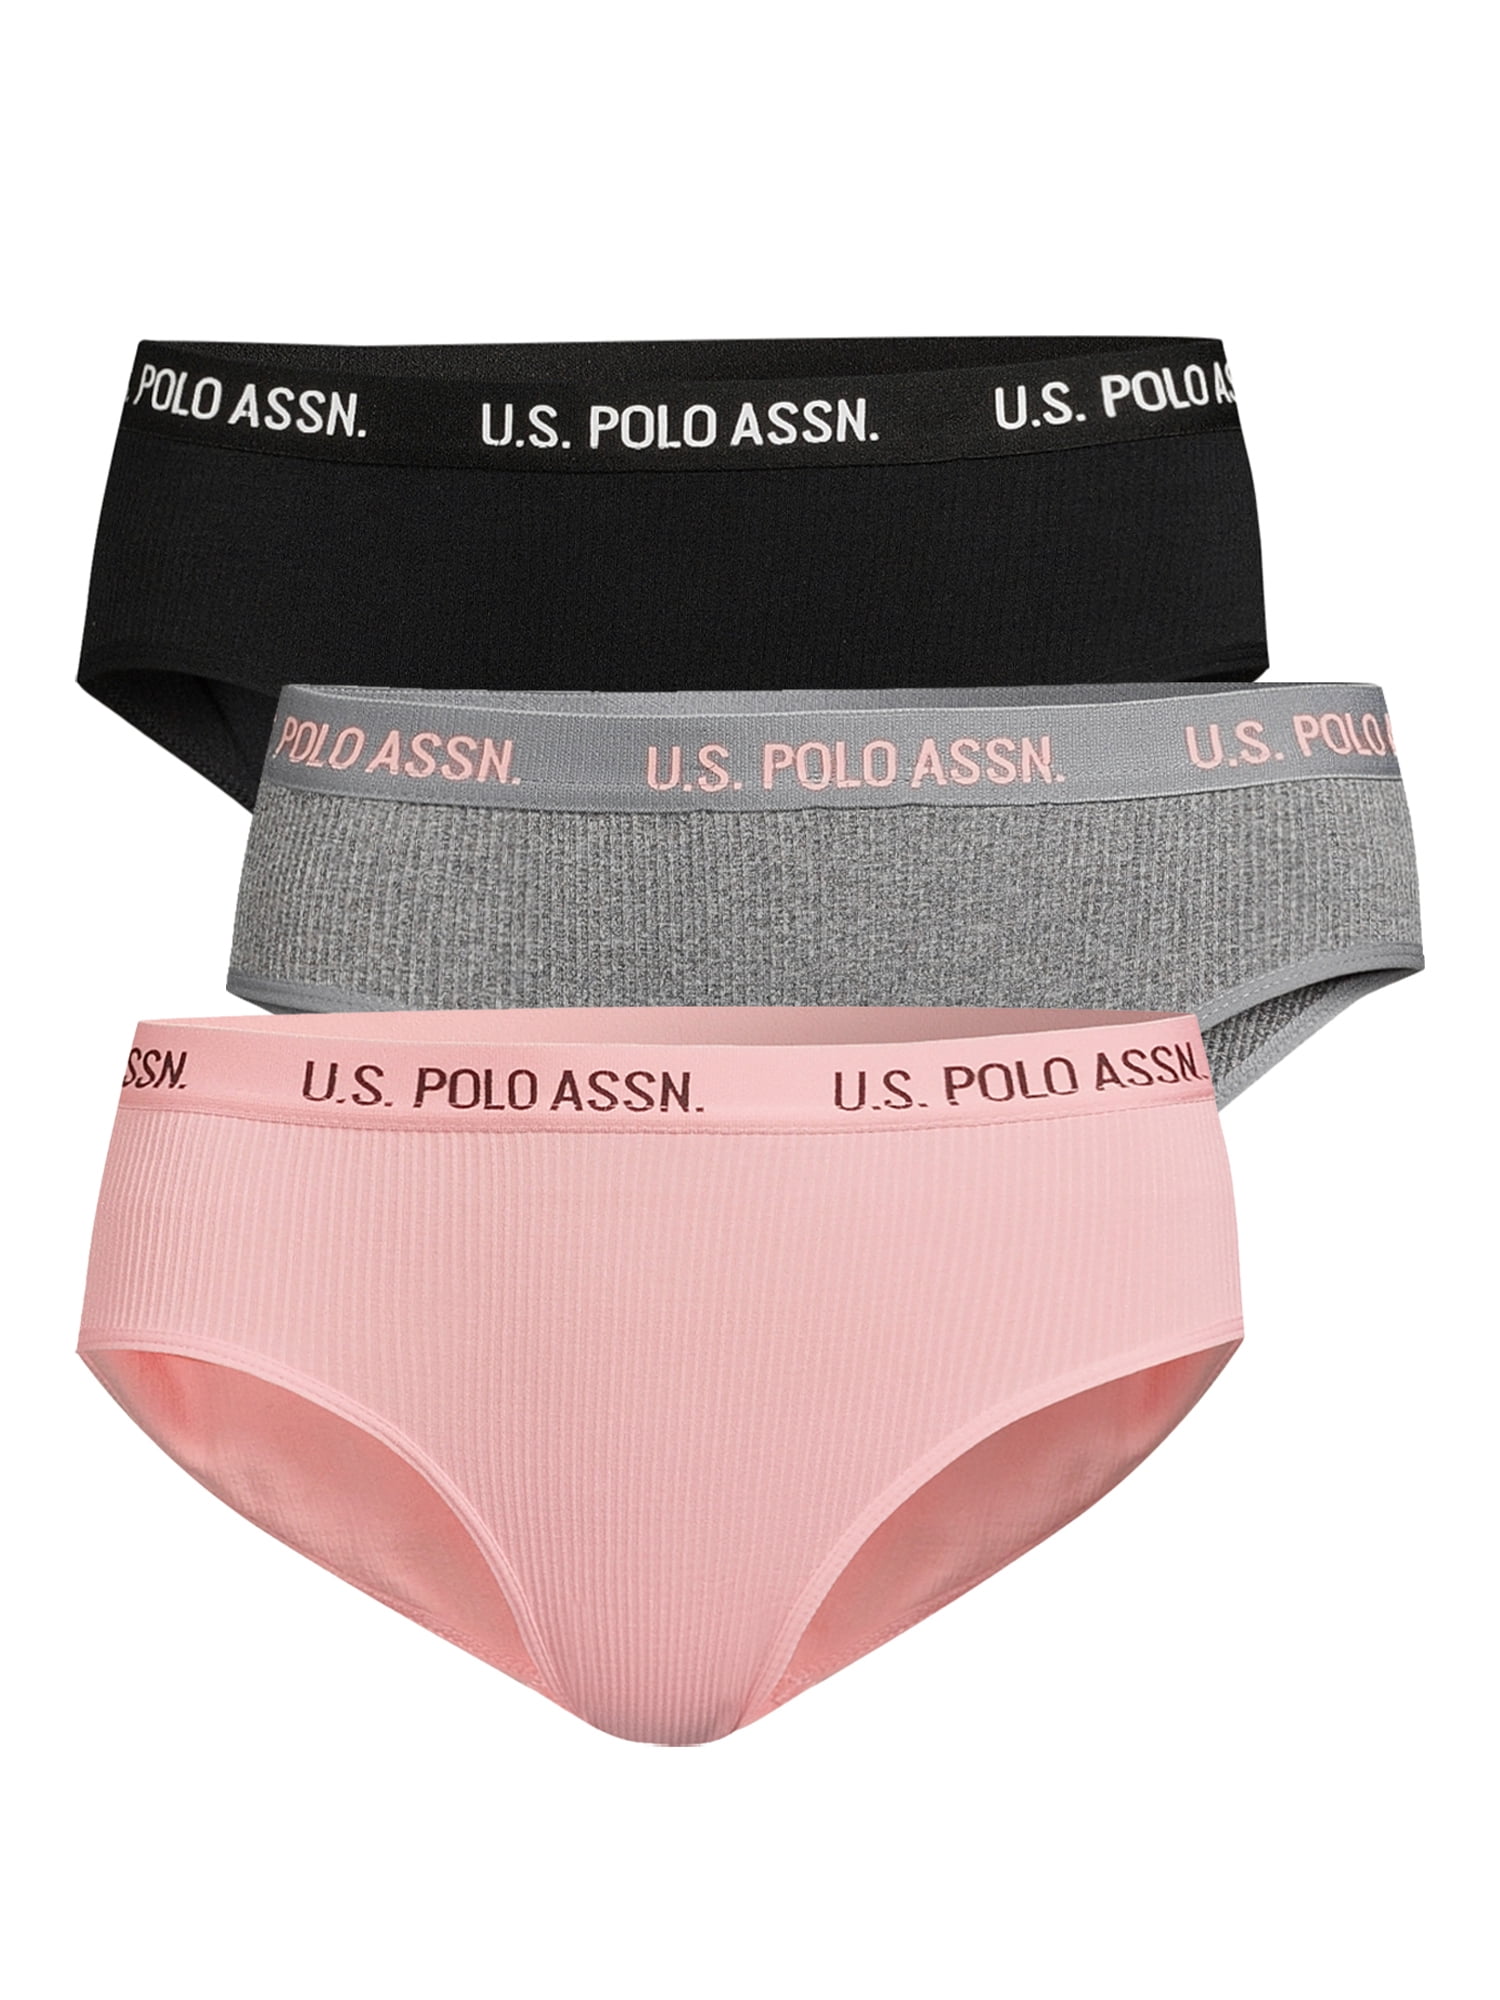 U.S. Polo Assn. Women's Seamless Hipster Panties, 3-Pack